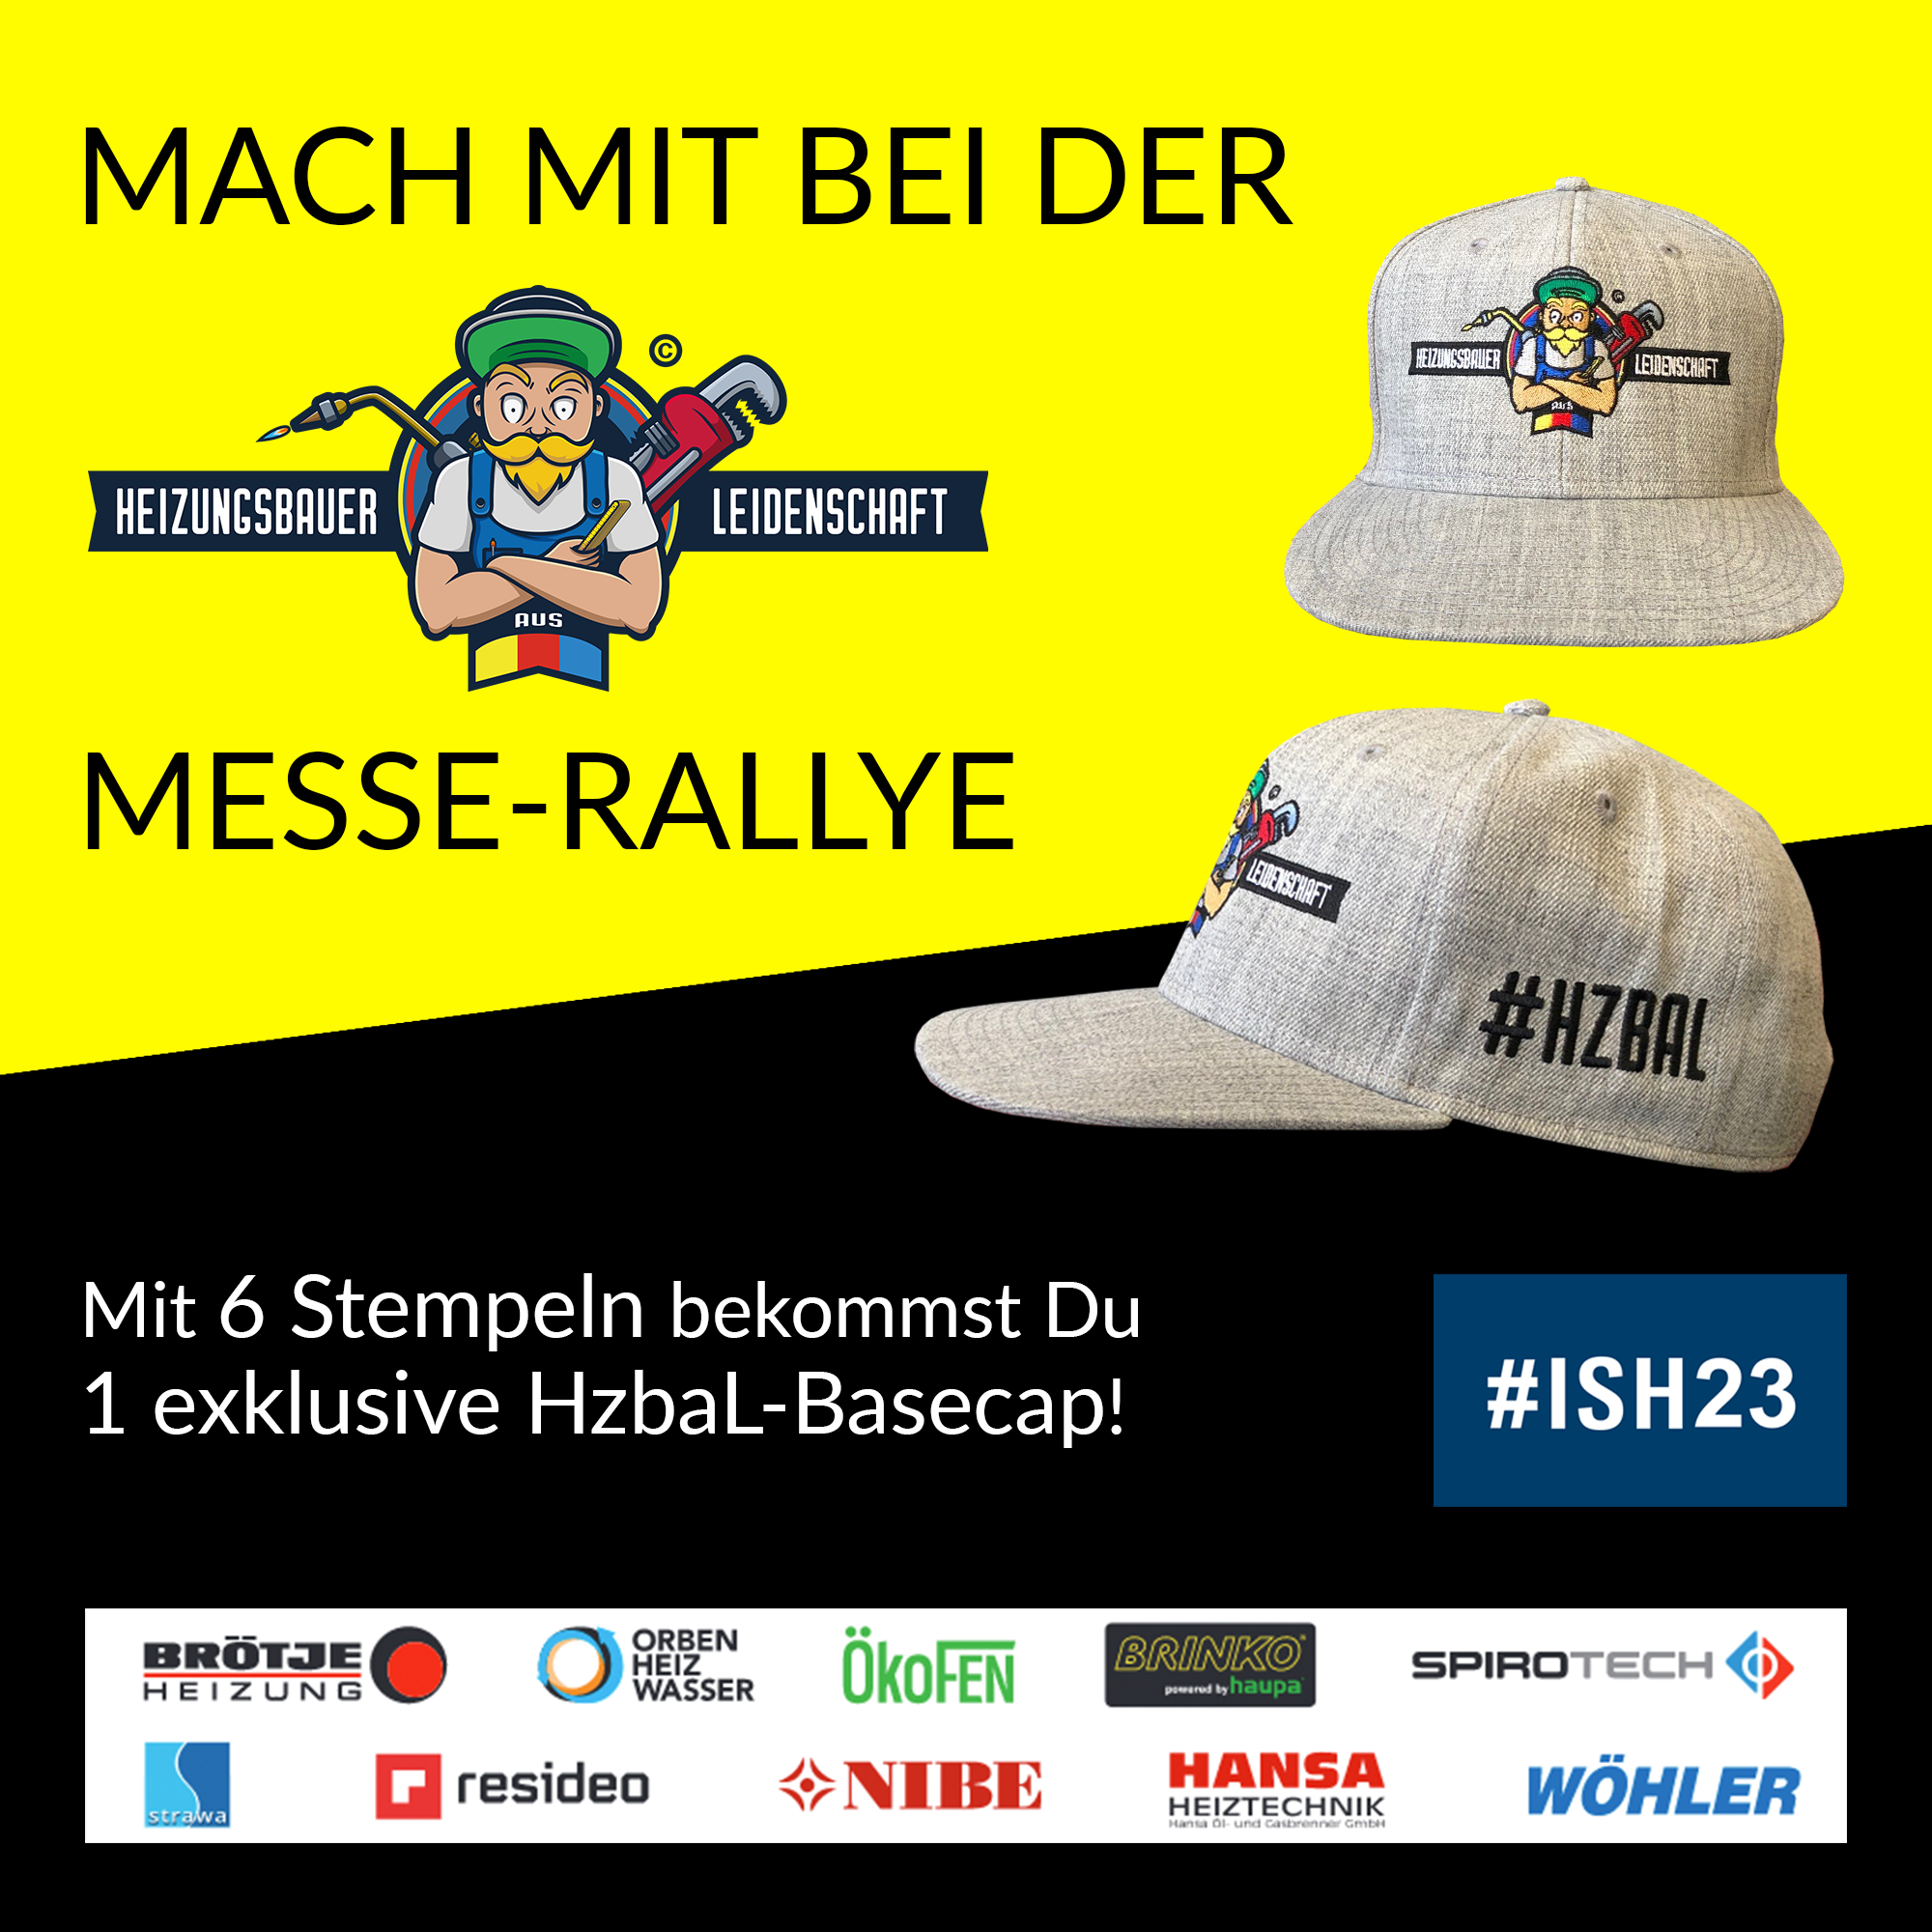 Heizungsbauer aus Leidenschaft Messe-Rallye auf der ISH 2023